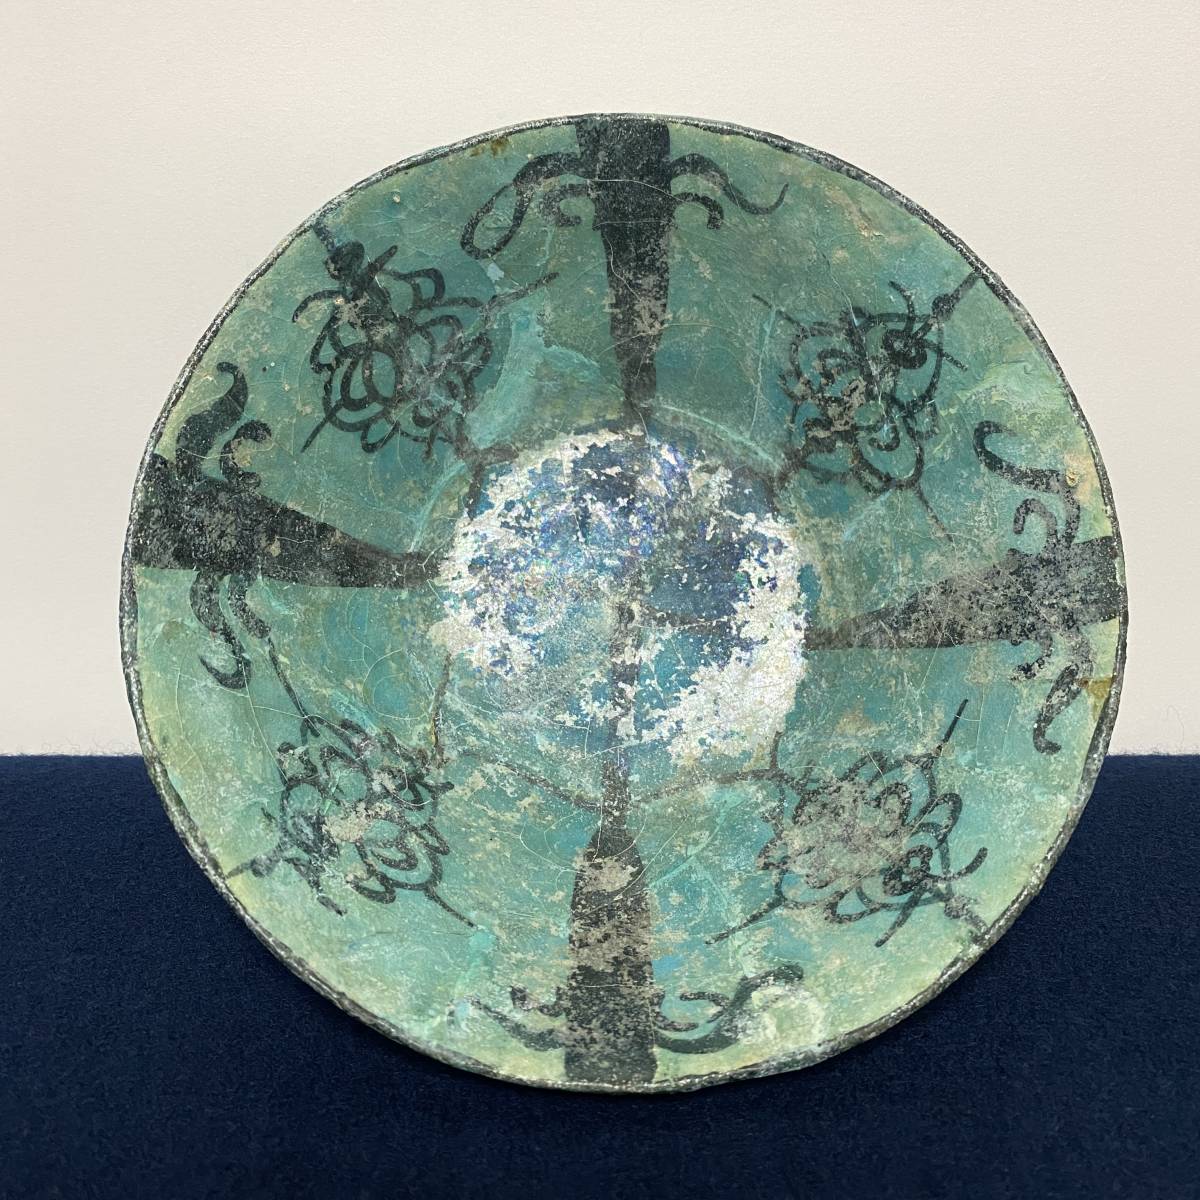 ペルシャ古陶 13世紀 銀化青釉黒彩花文鉢 高さ9.3cm 径18.9cm 発掘出土